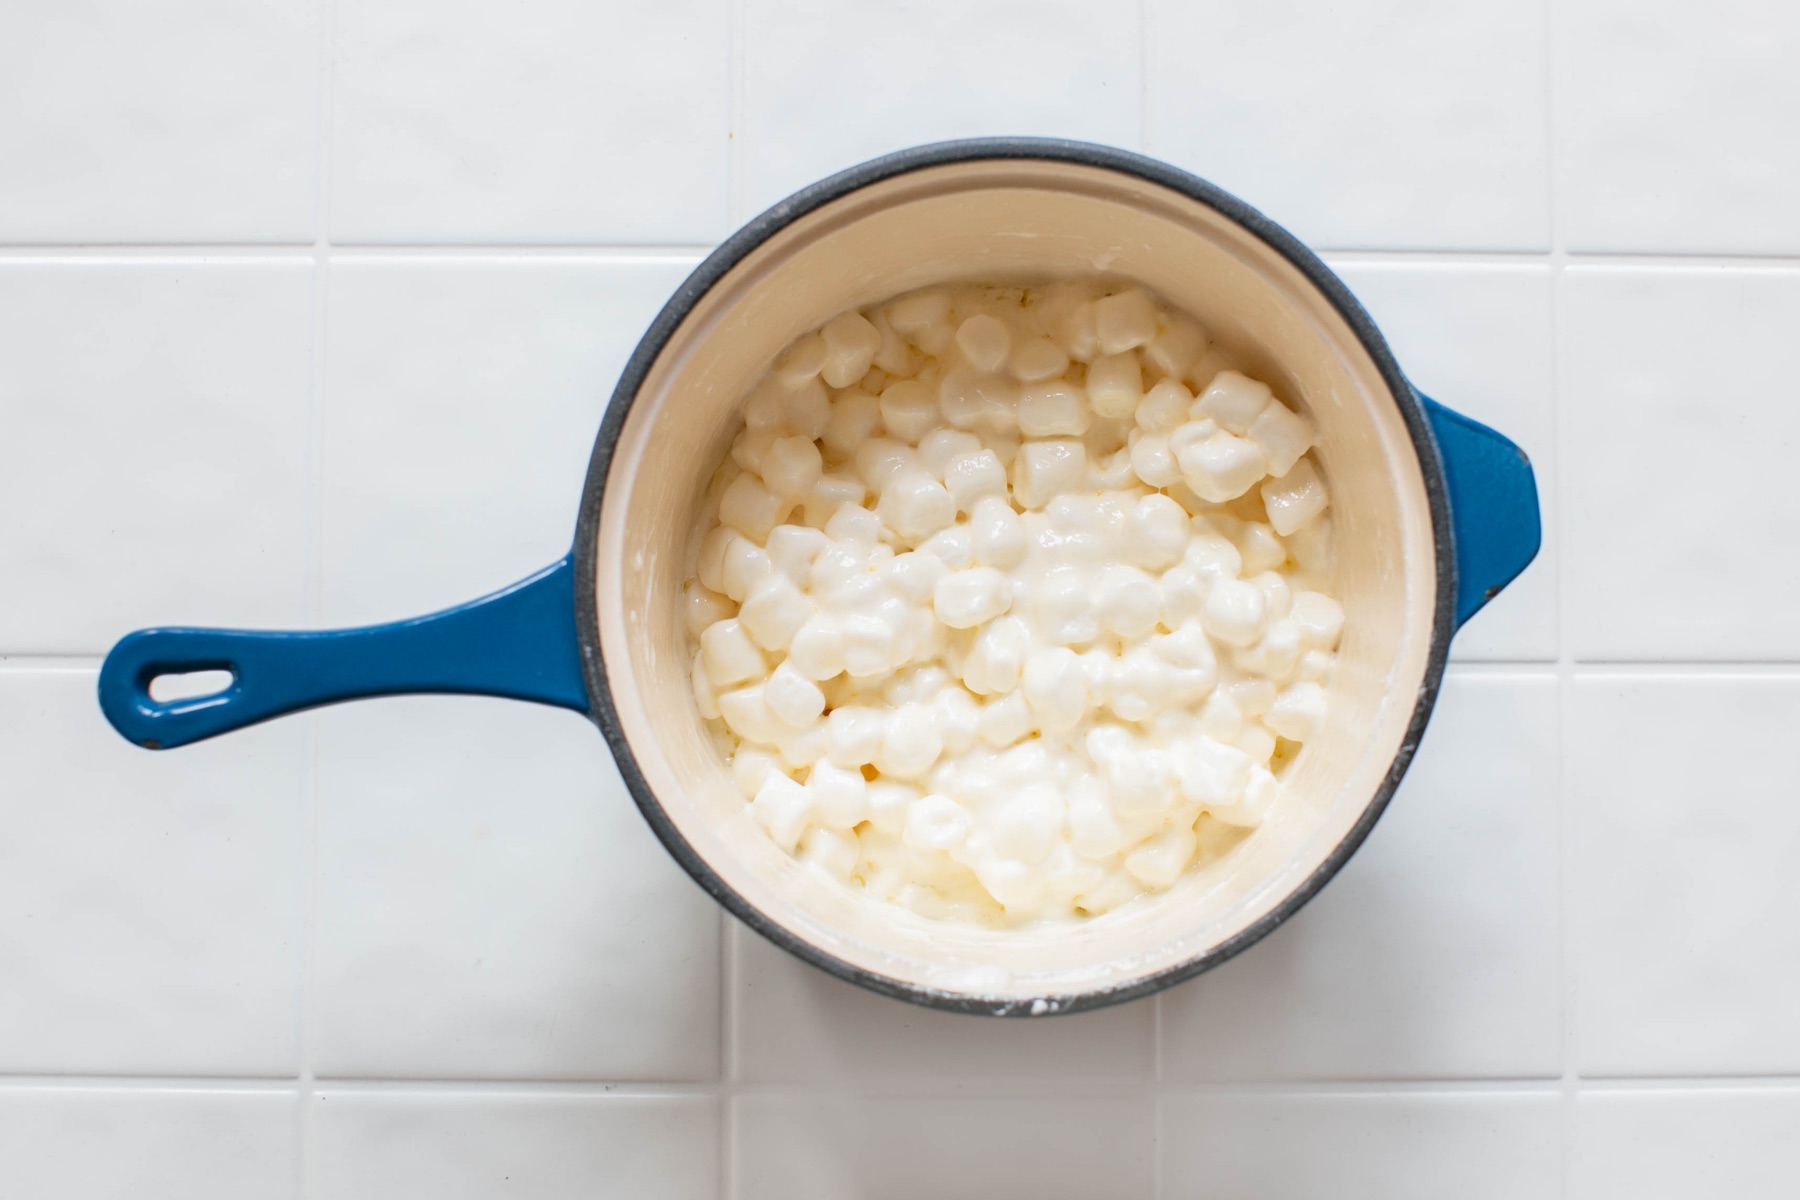 melt the marshmallows to make crispy treats